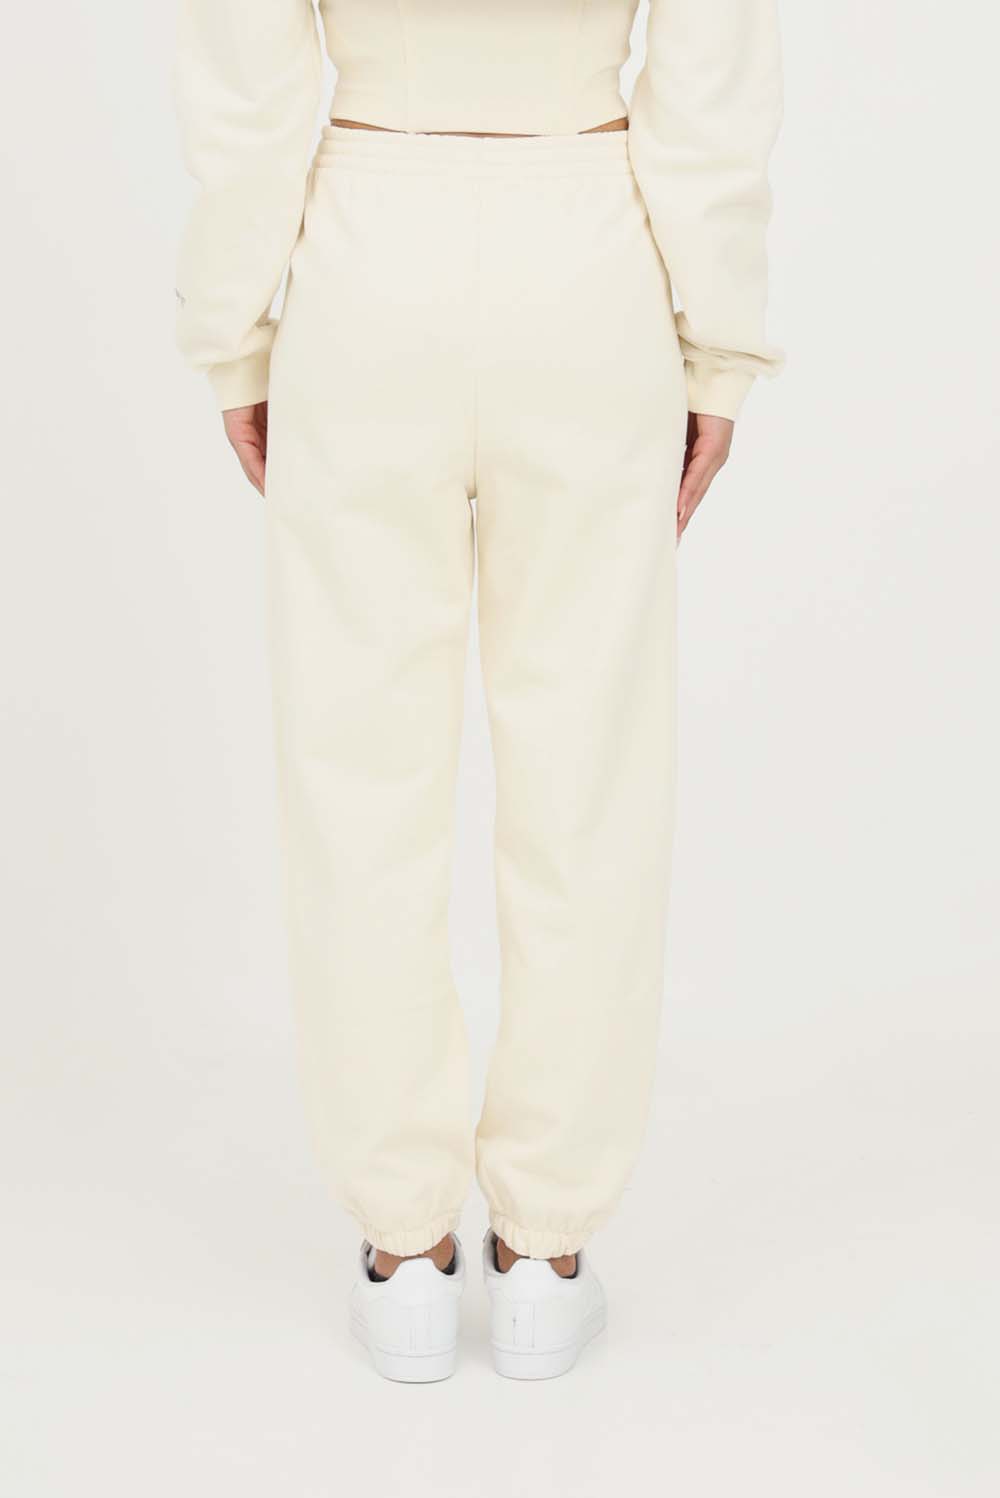  Hinnominate Pantalone In Felpa Bianco Burro Donna - 3